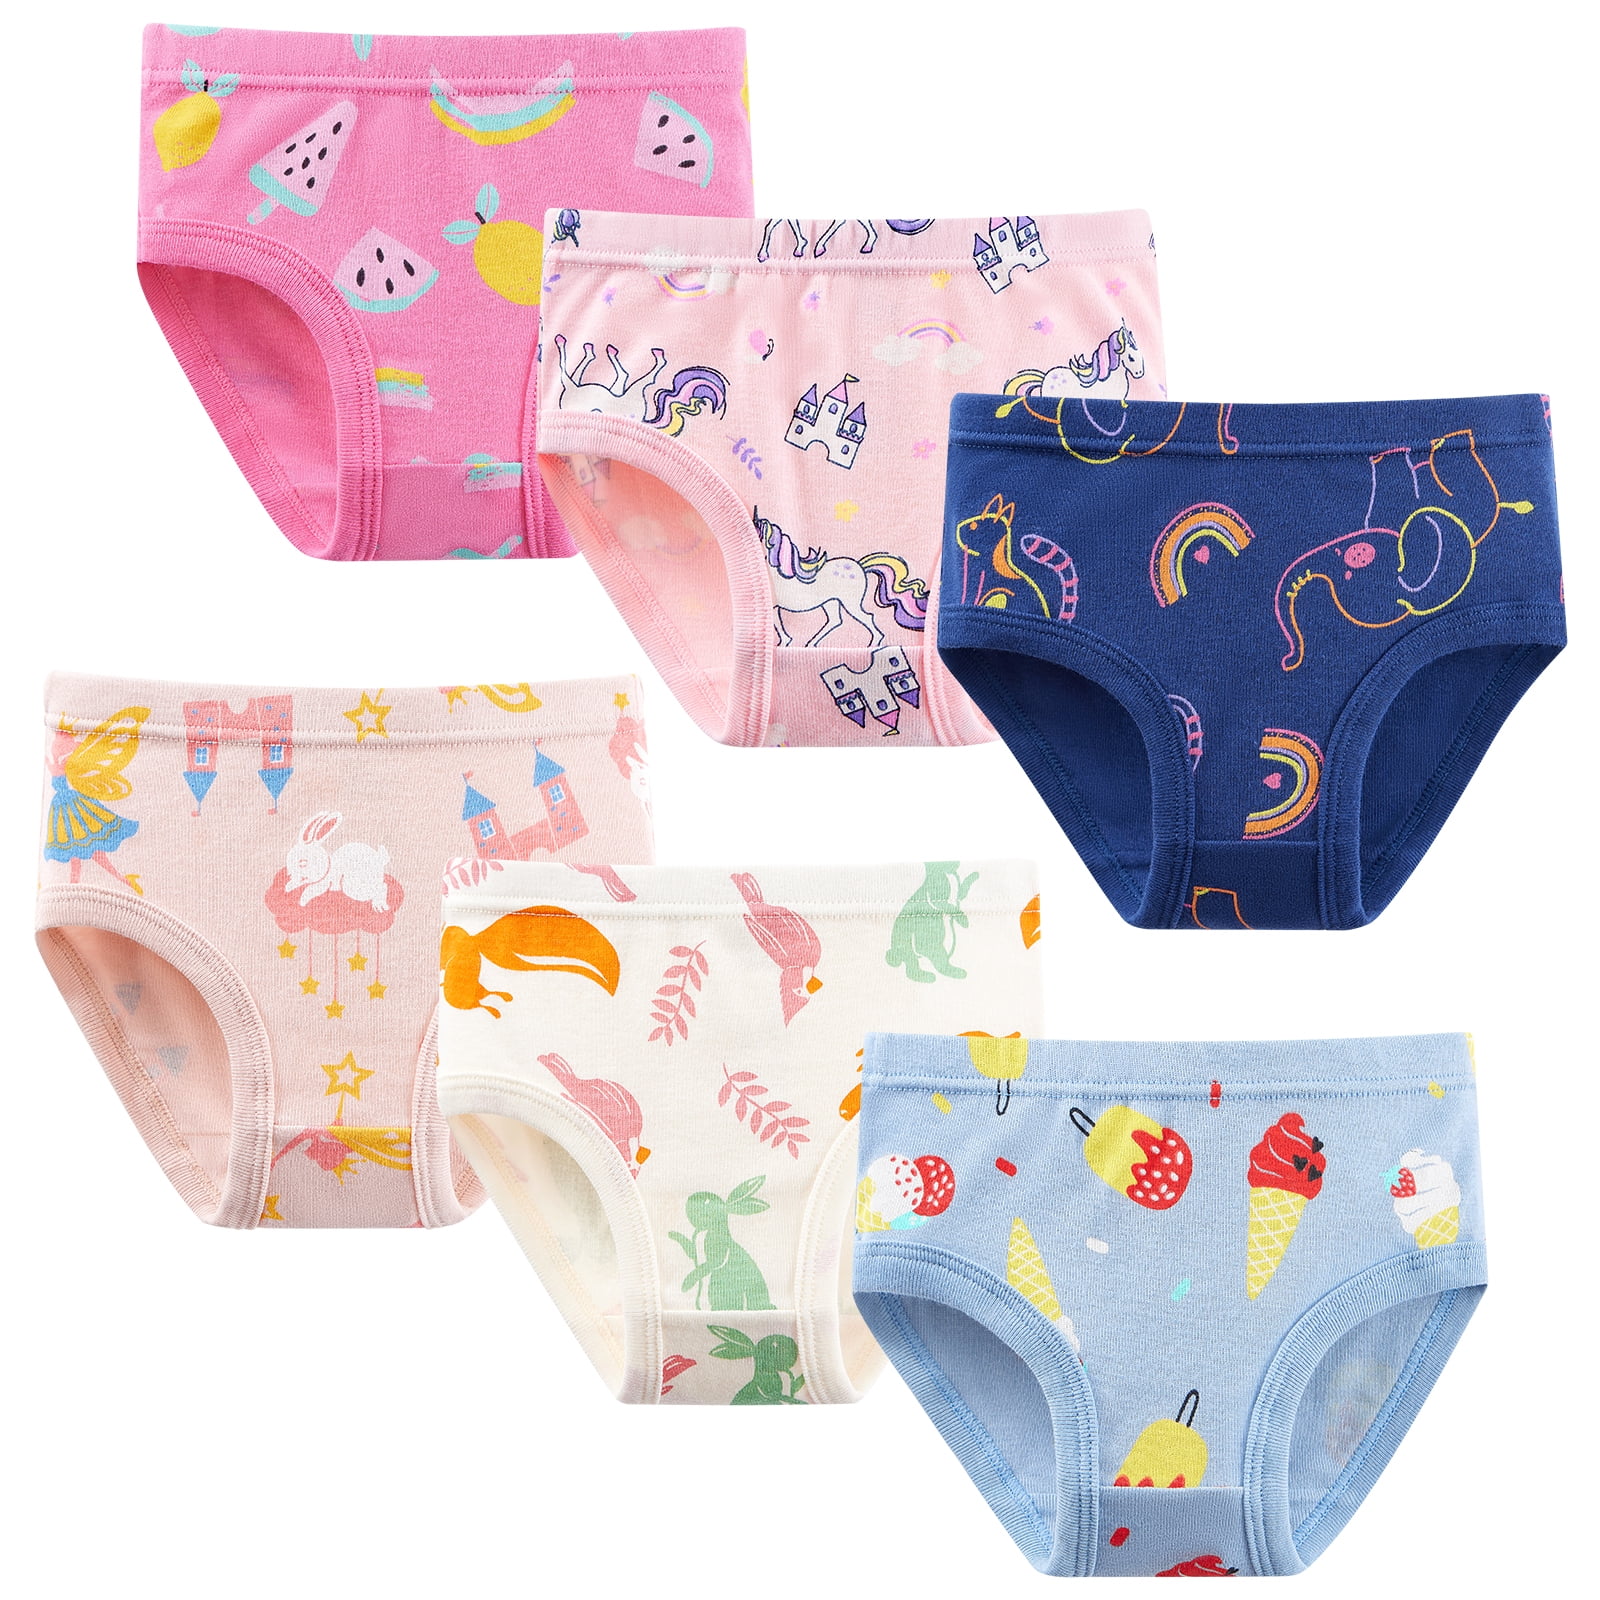 Toddler Underwear Kids Undies Girls Cotton Panties Size 5-6T (Pack